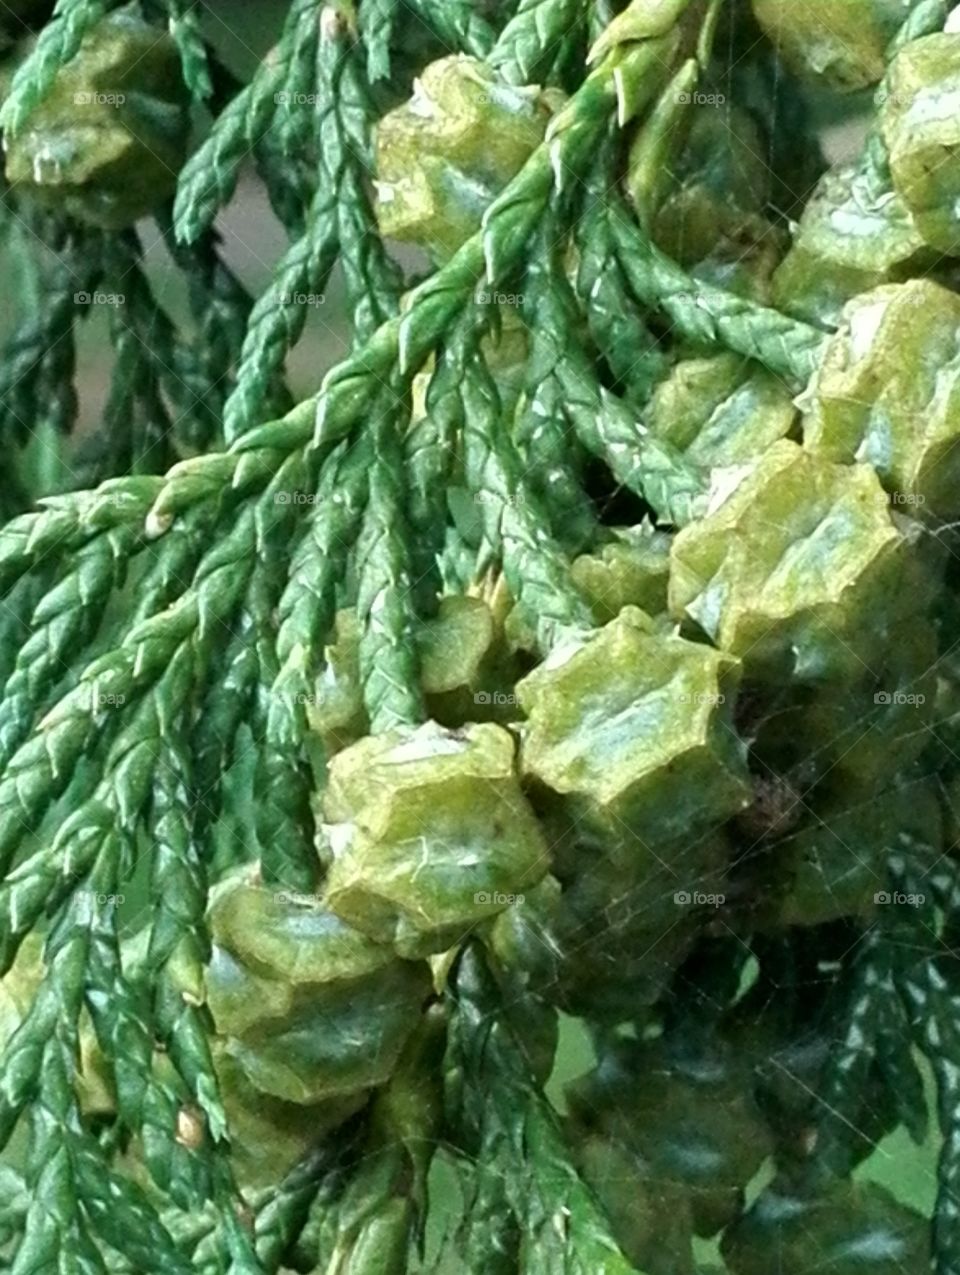 Young seeds of sawara cypress